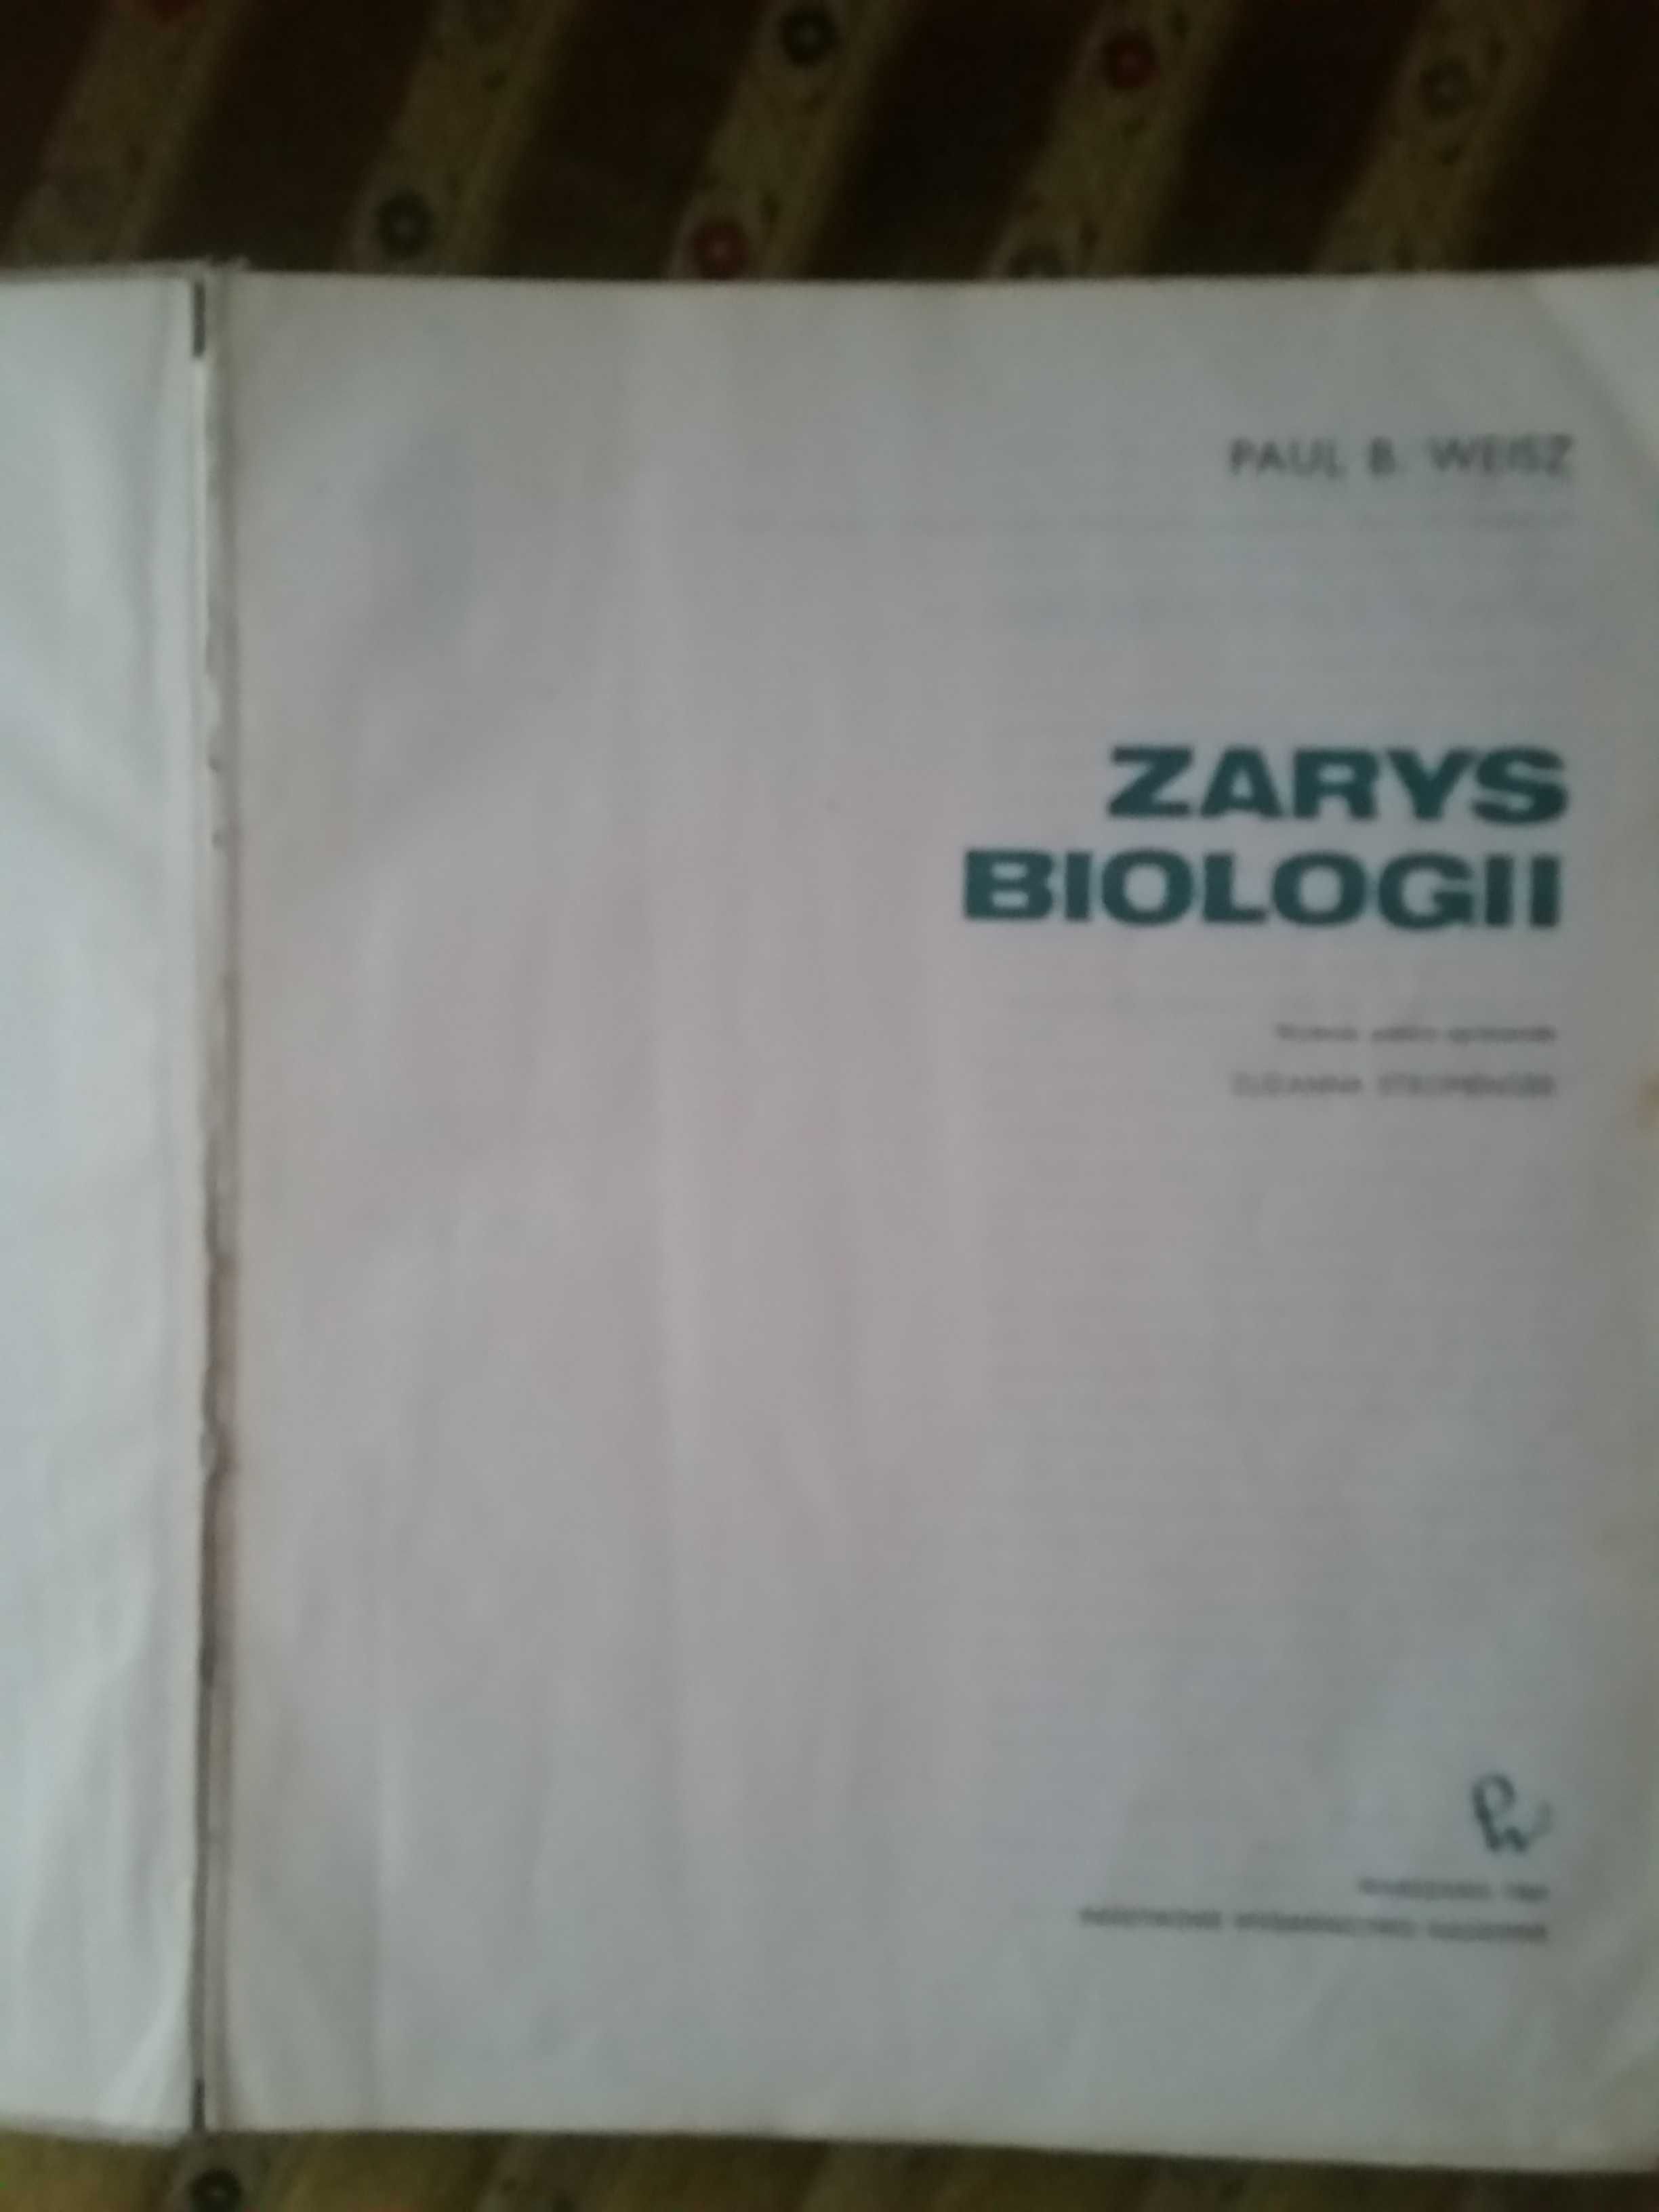 Zarys biologii Paul B. Weisz PWN stara książka naukowa 1969